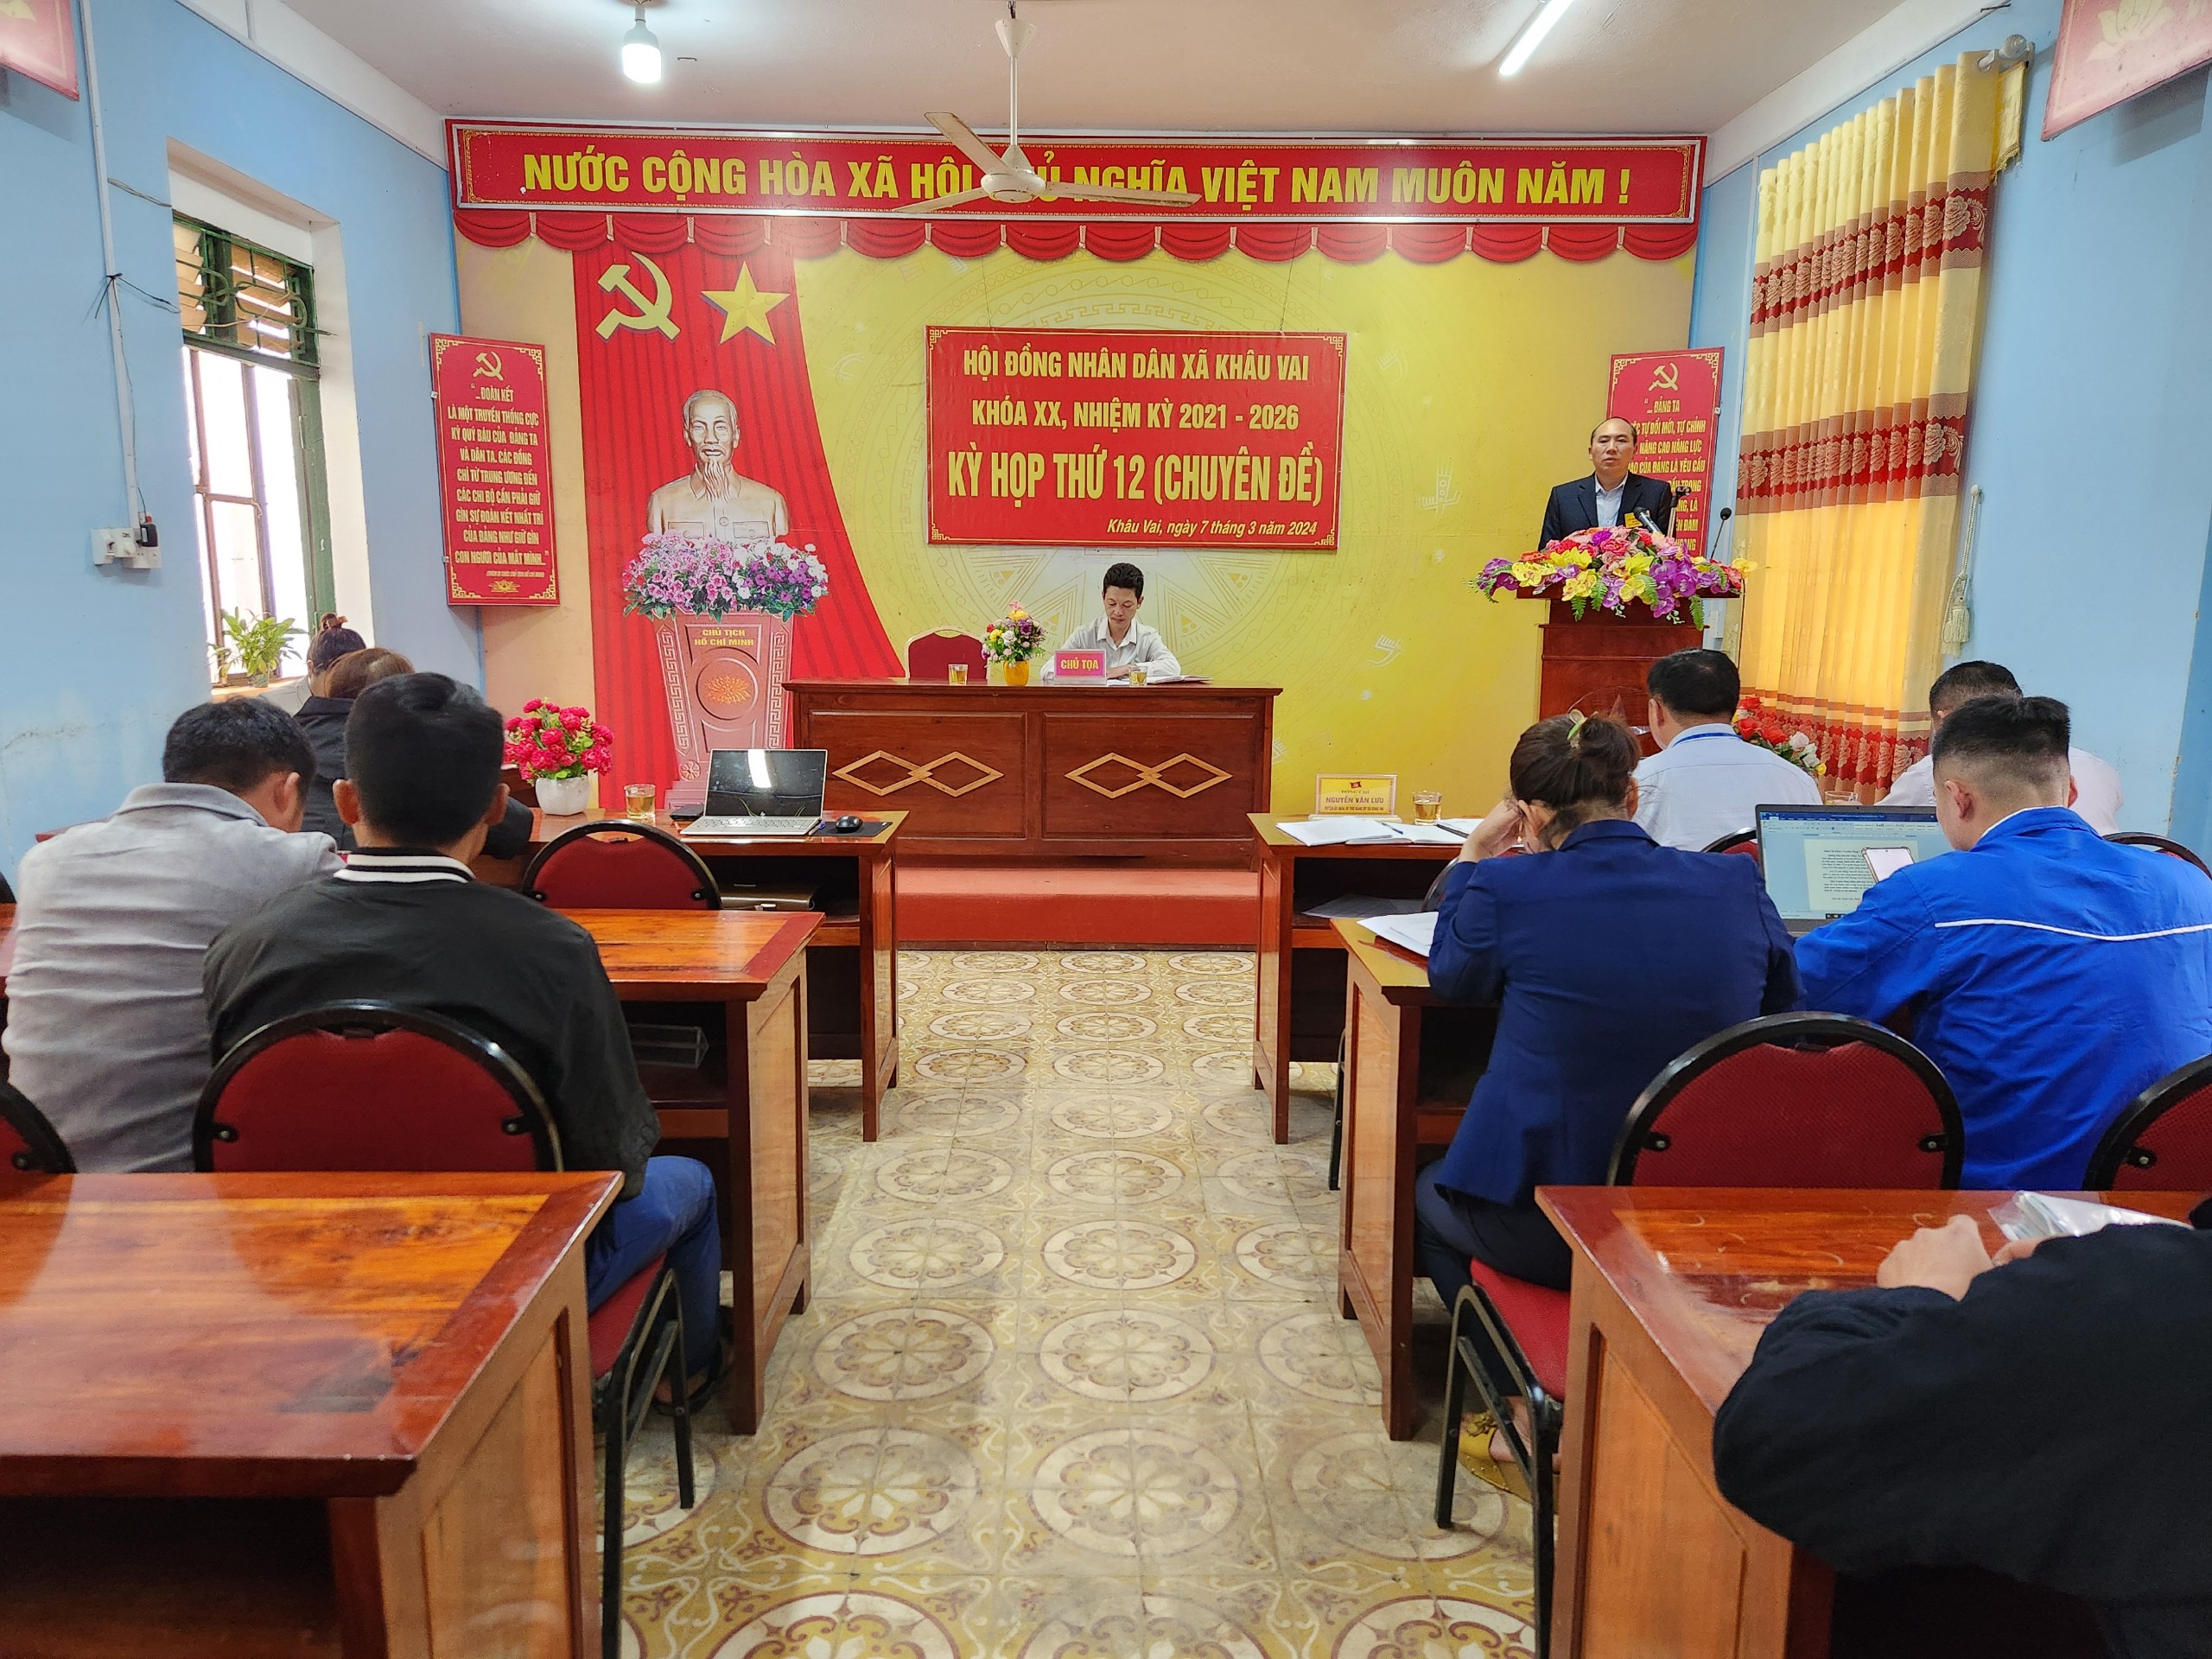 Hội đồng nhân dân xã Khâu Vai tổ chức kỳ họp thứ 12